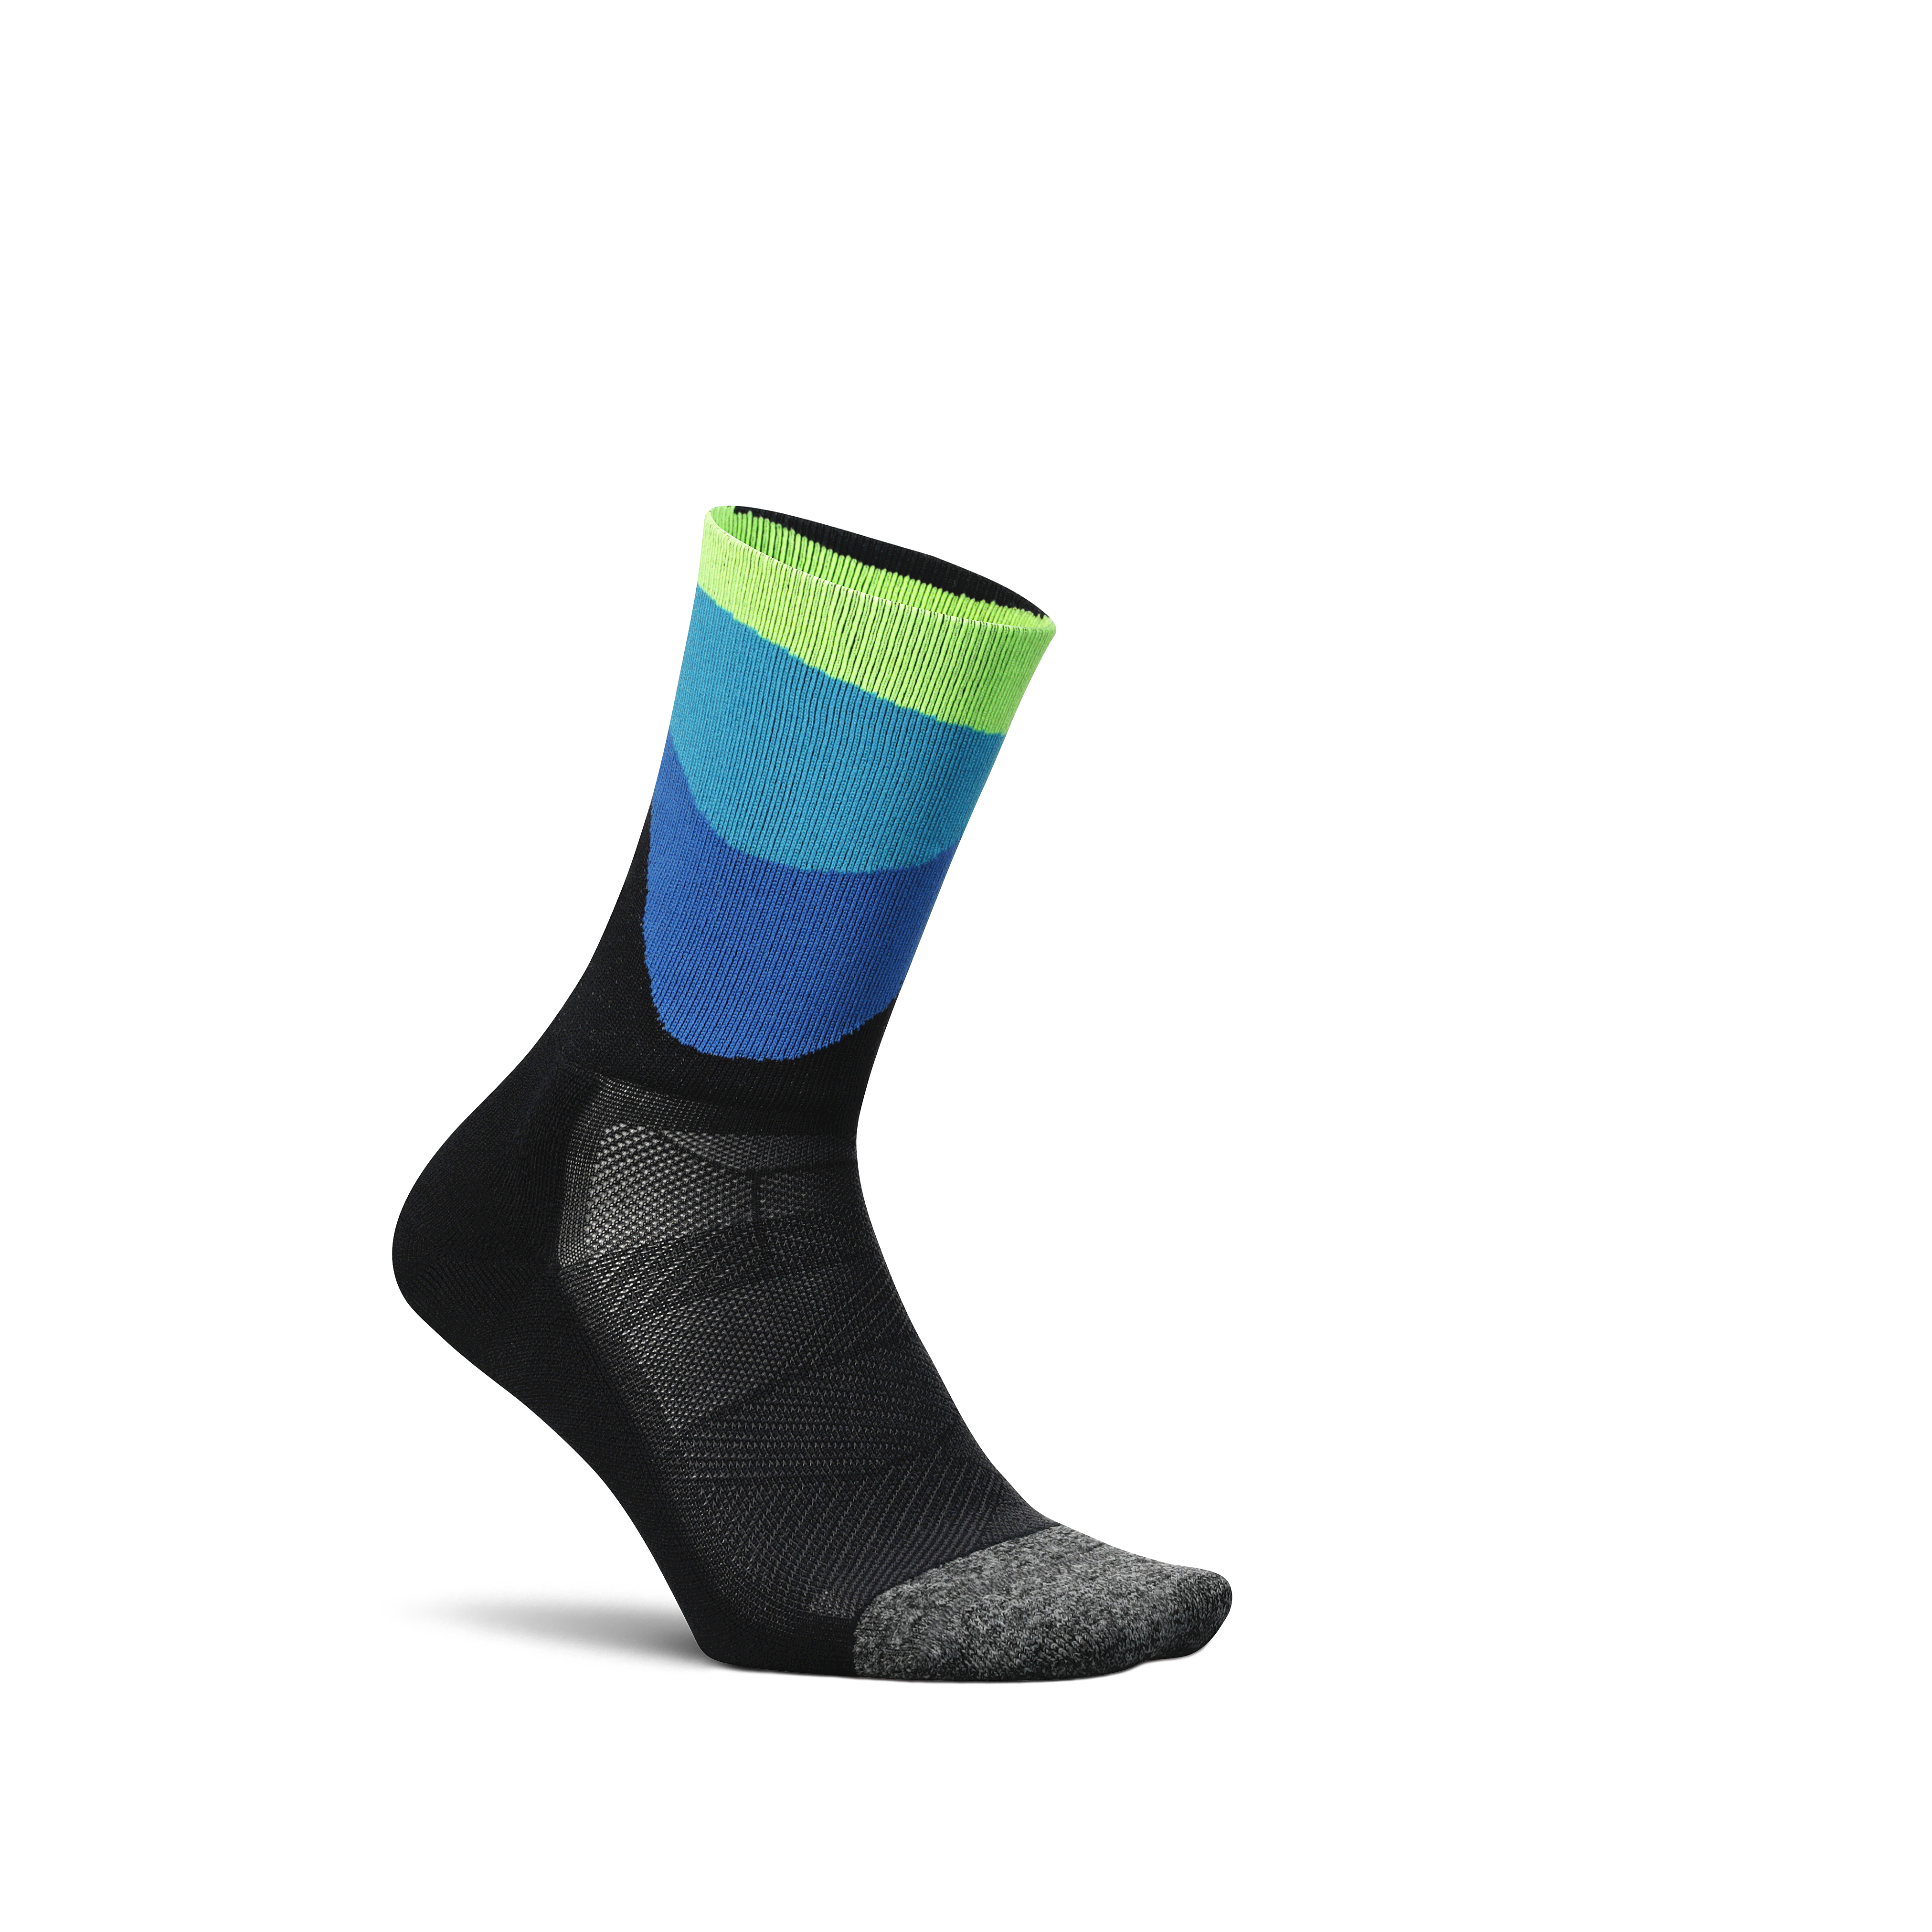 Men's Socks, Elite Performance Socks